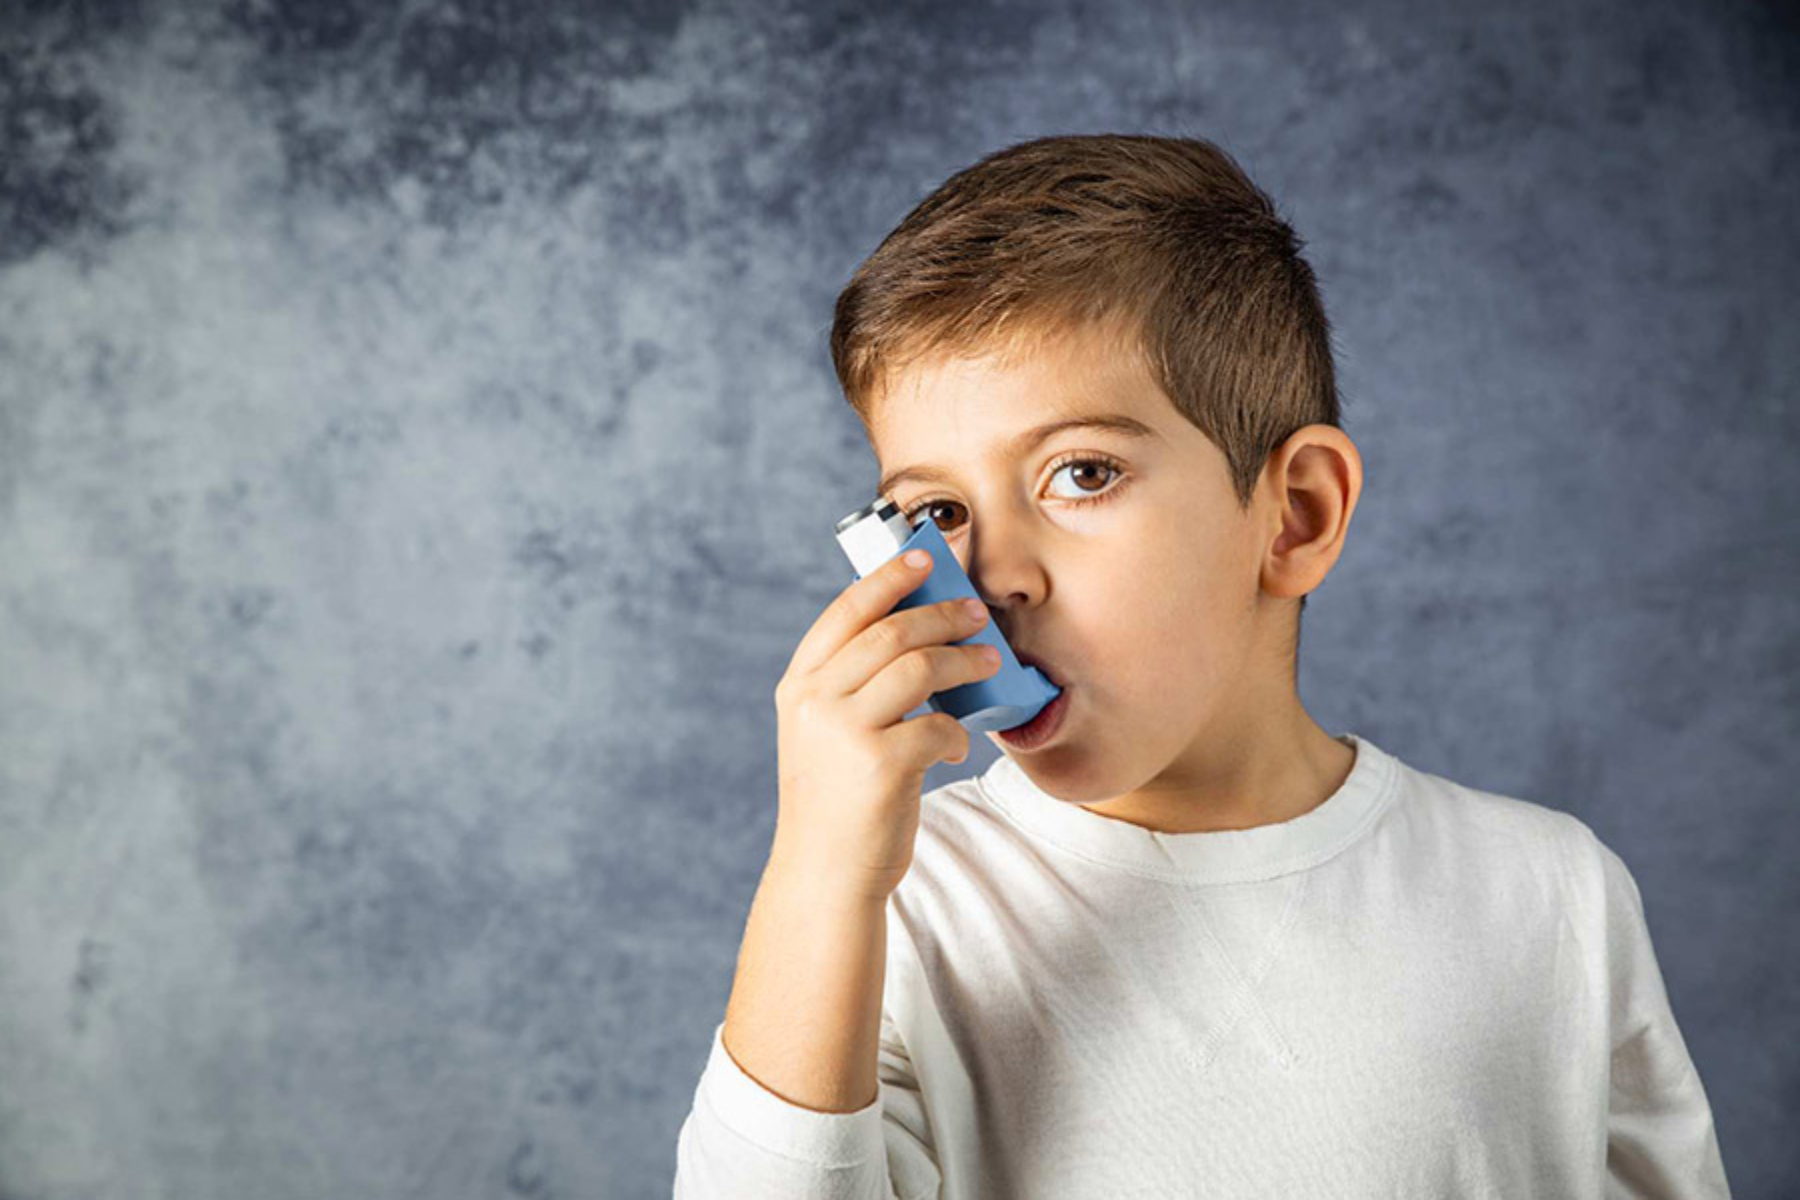 Άσθμα: Πόσο σημαντική είναι η ύπαρξη συσκευών εισπνοής άσθματος στα σχολεία;